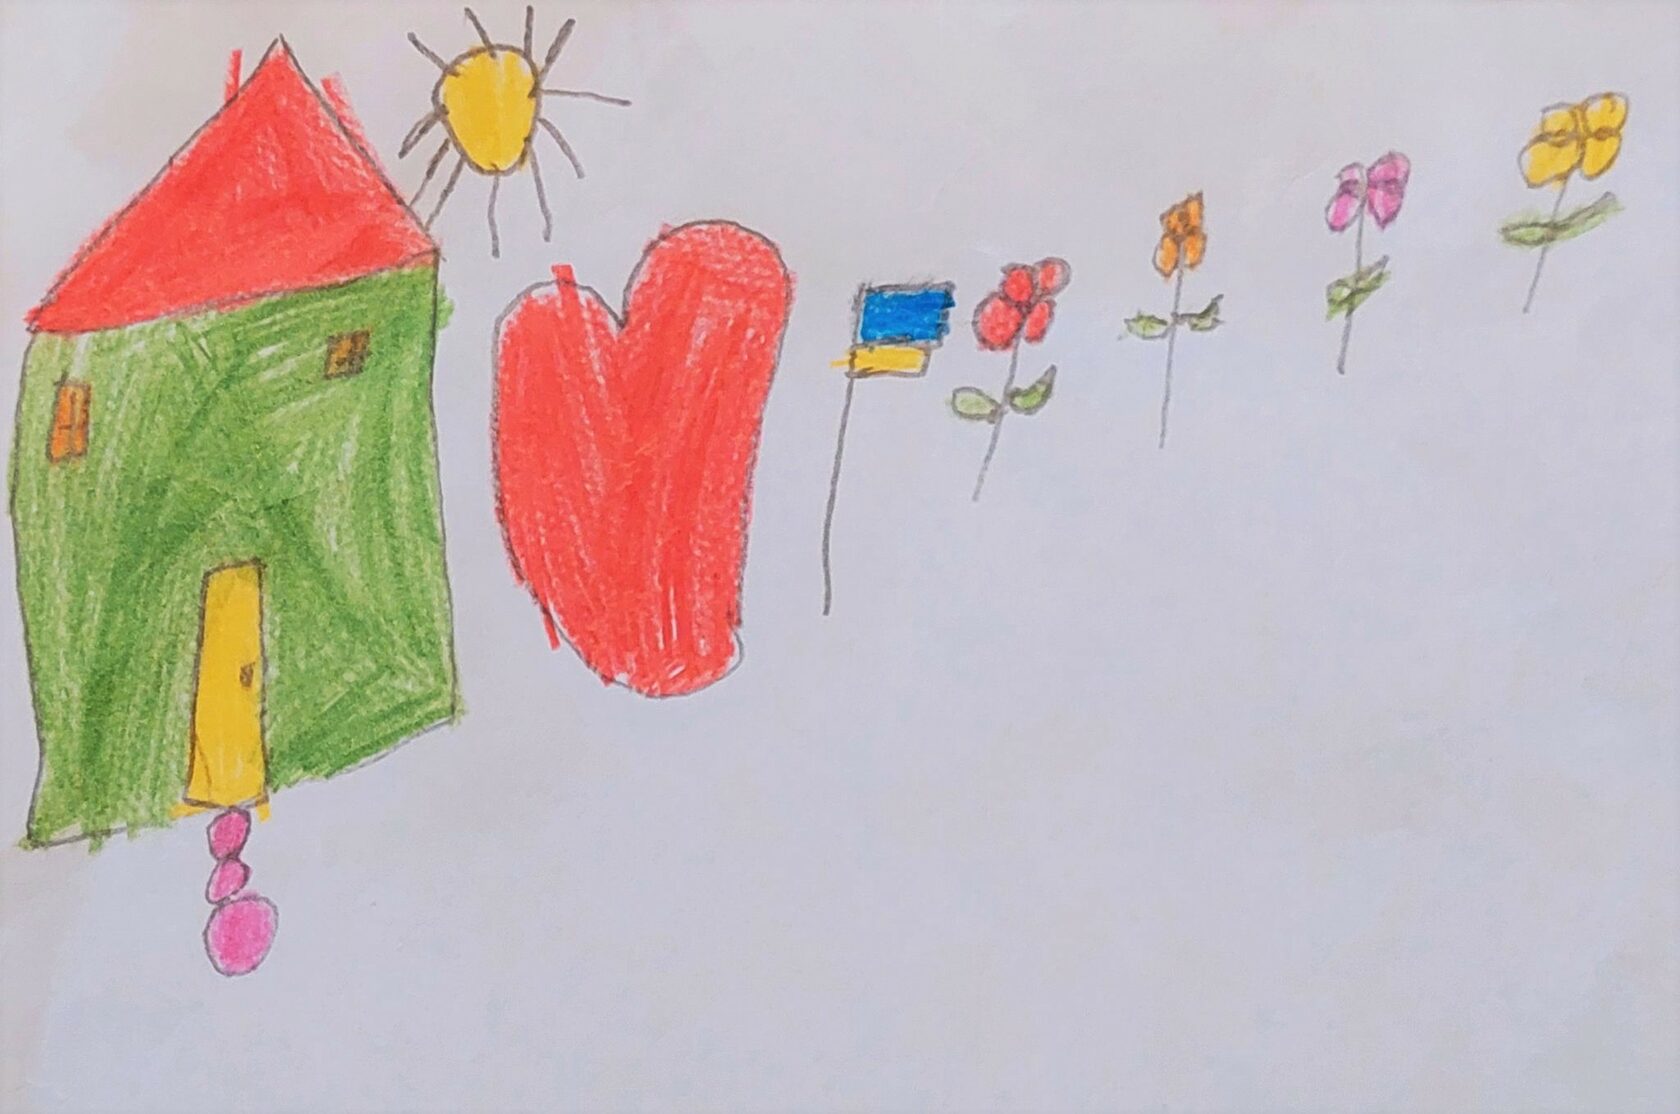 Ламія - Миру та процвітання Україні - малюнок конкурсу дитячої творчості в Баку - Азербайджан